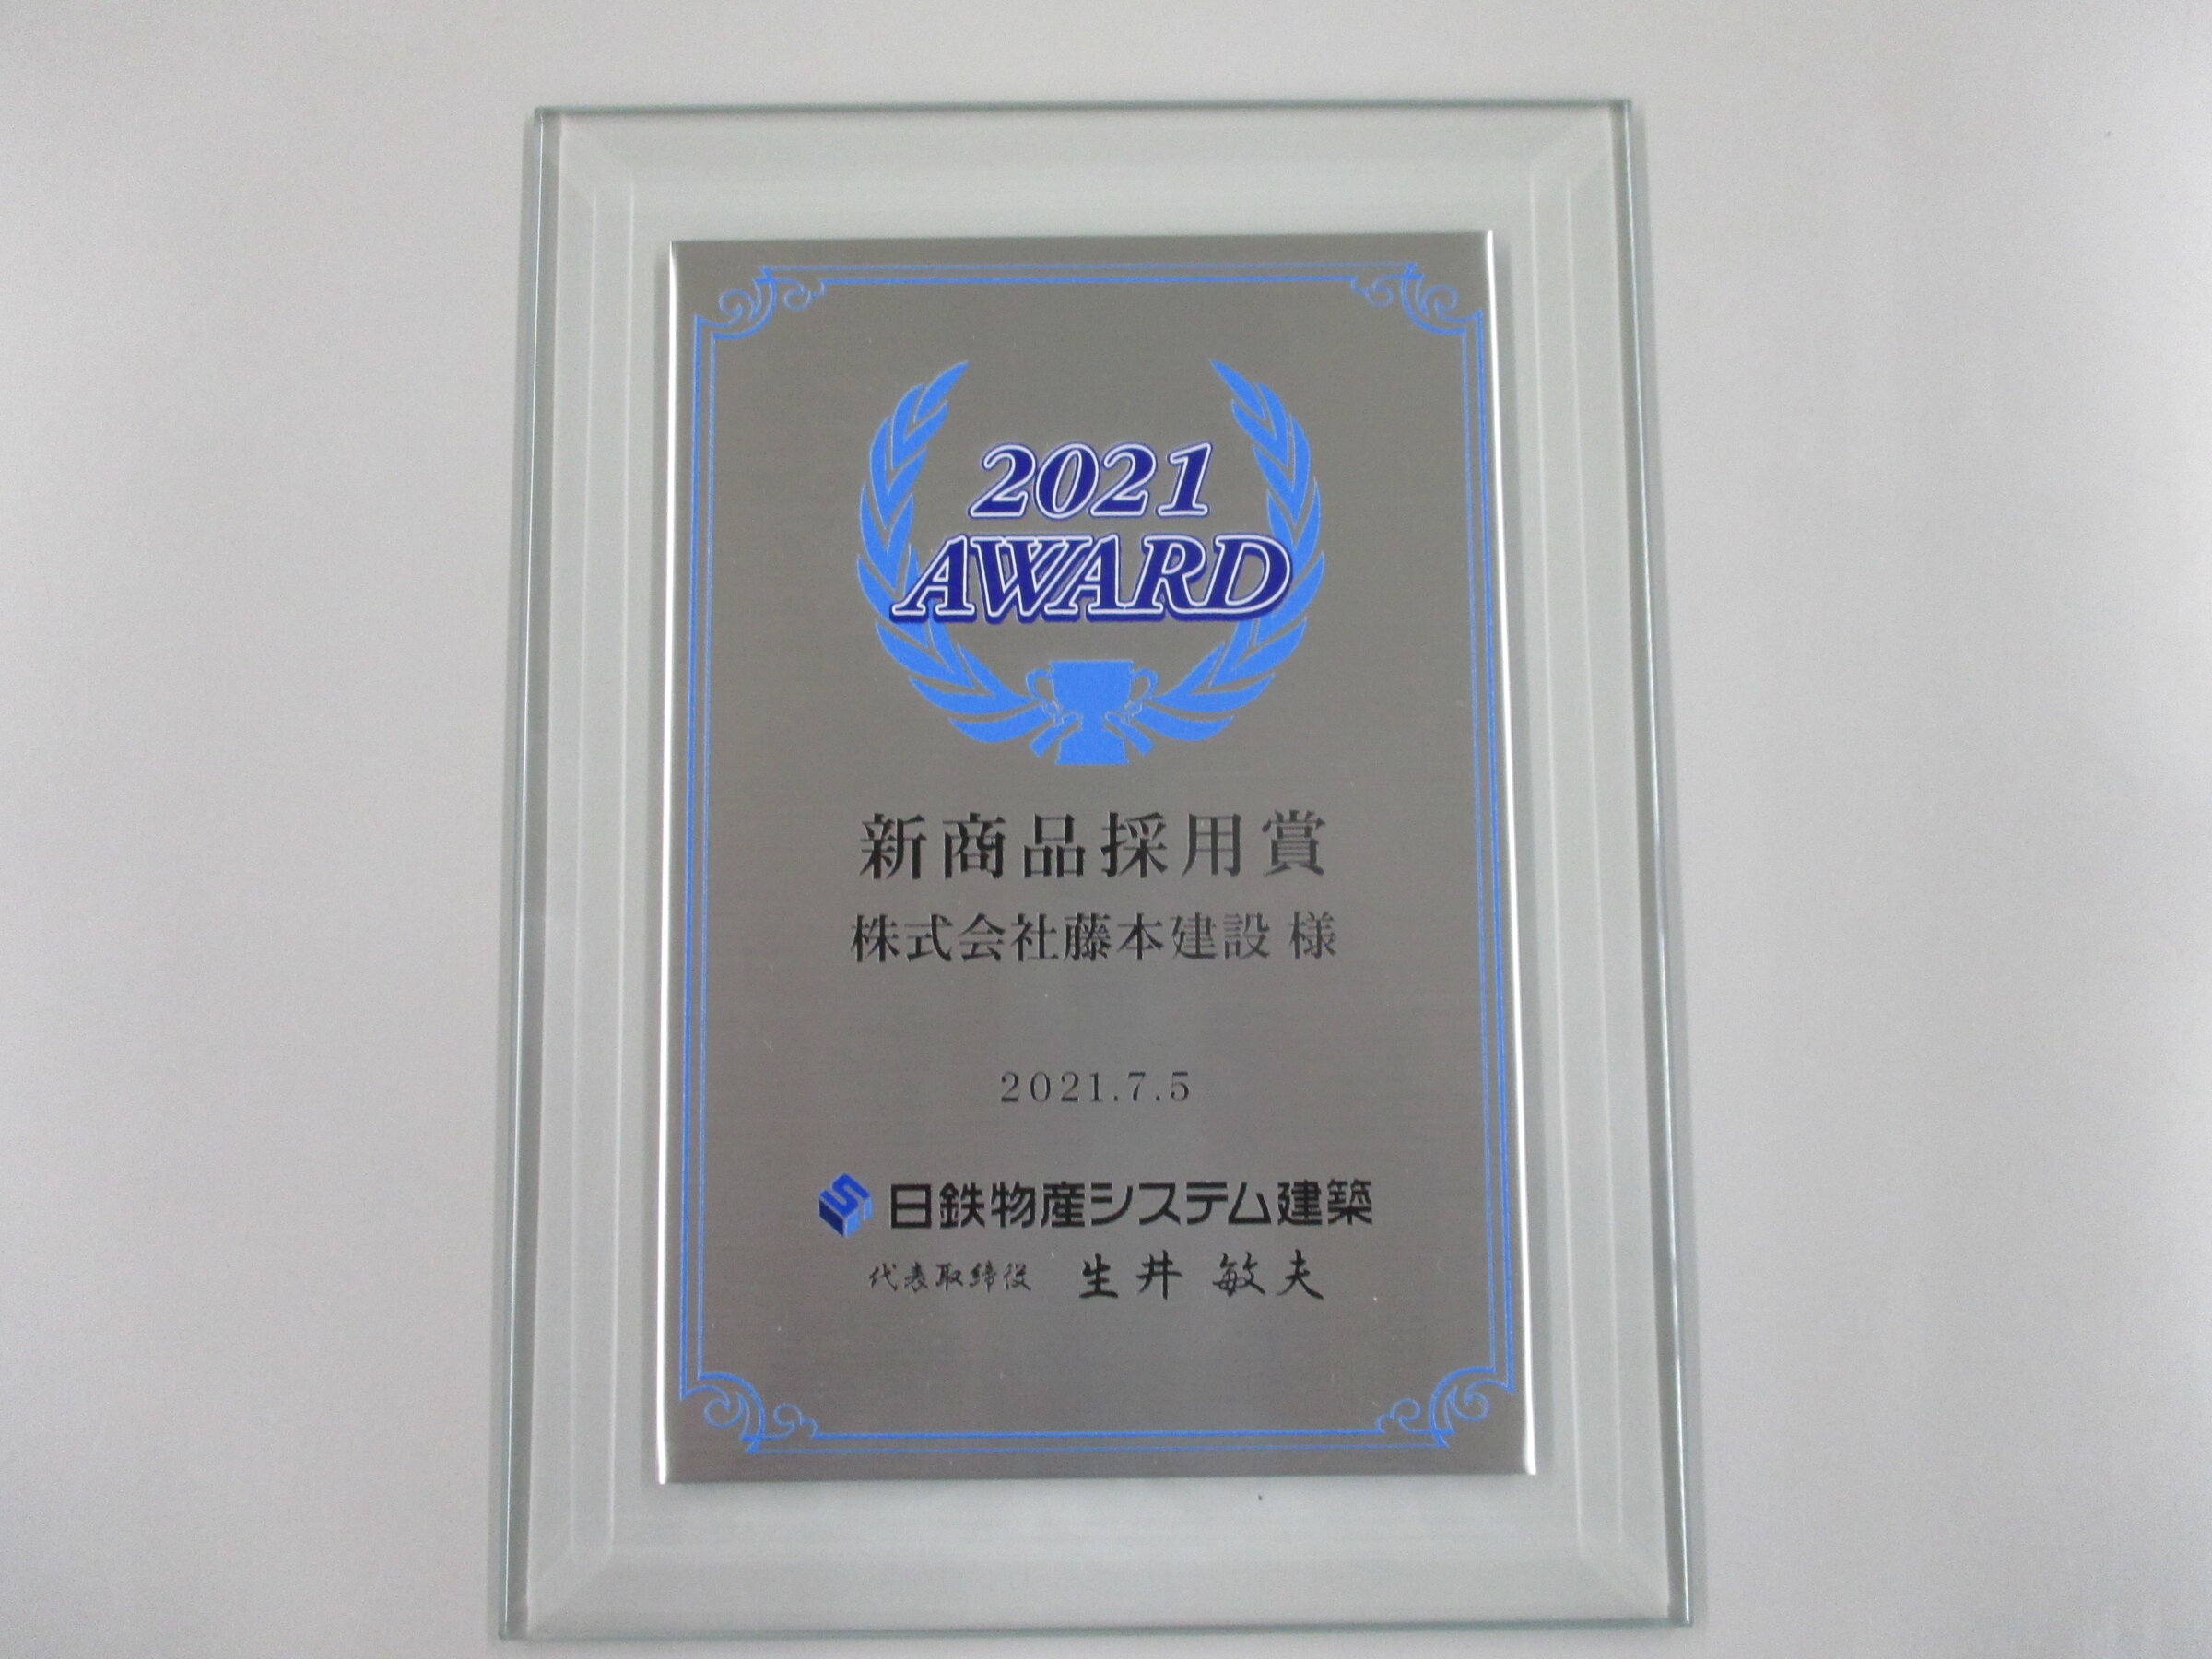 日鉄物産システム建築株式会社様から表彰をうけました。